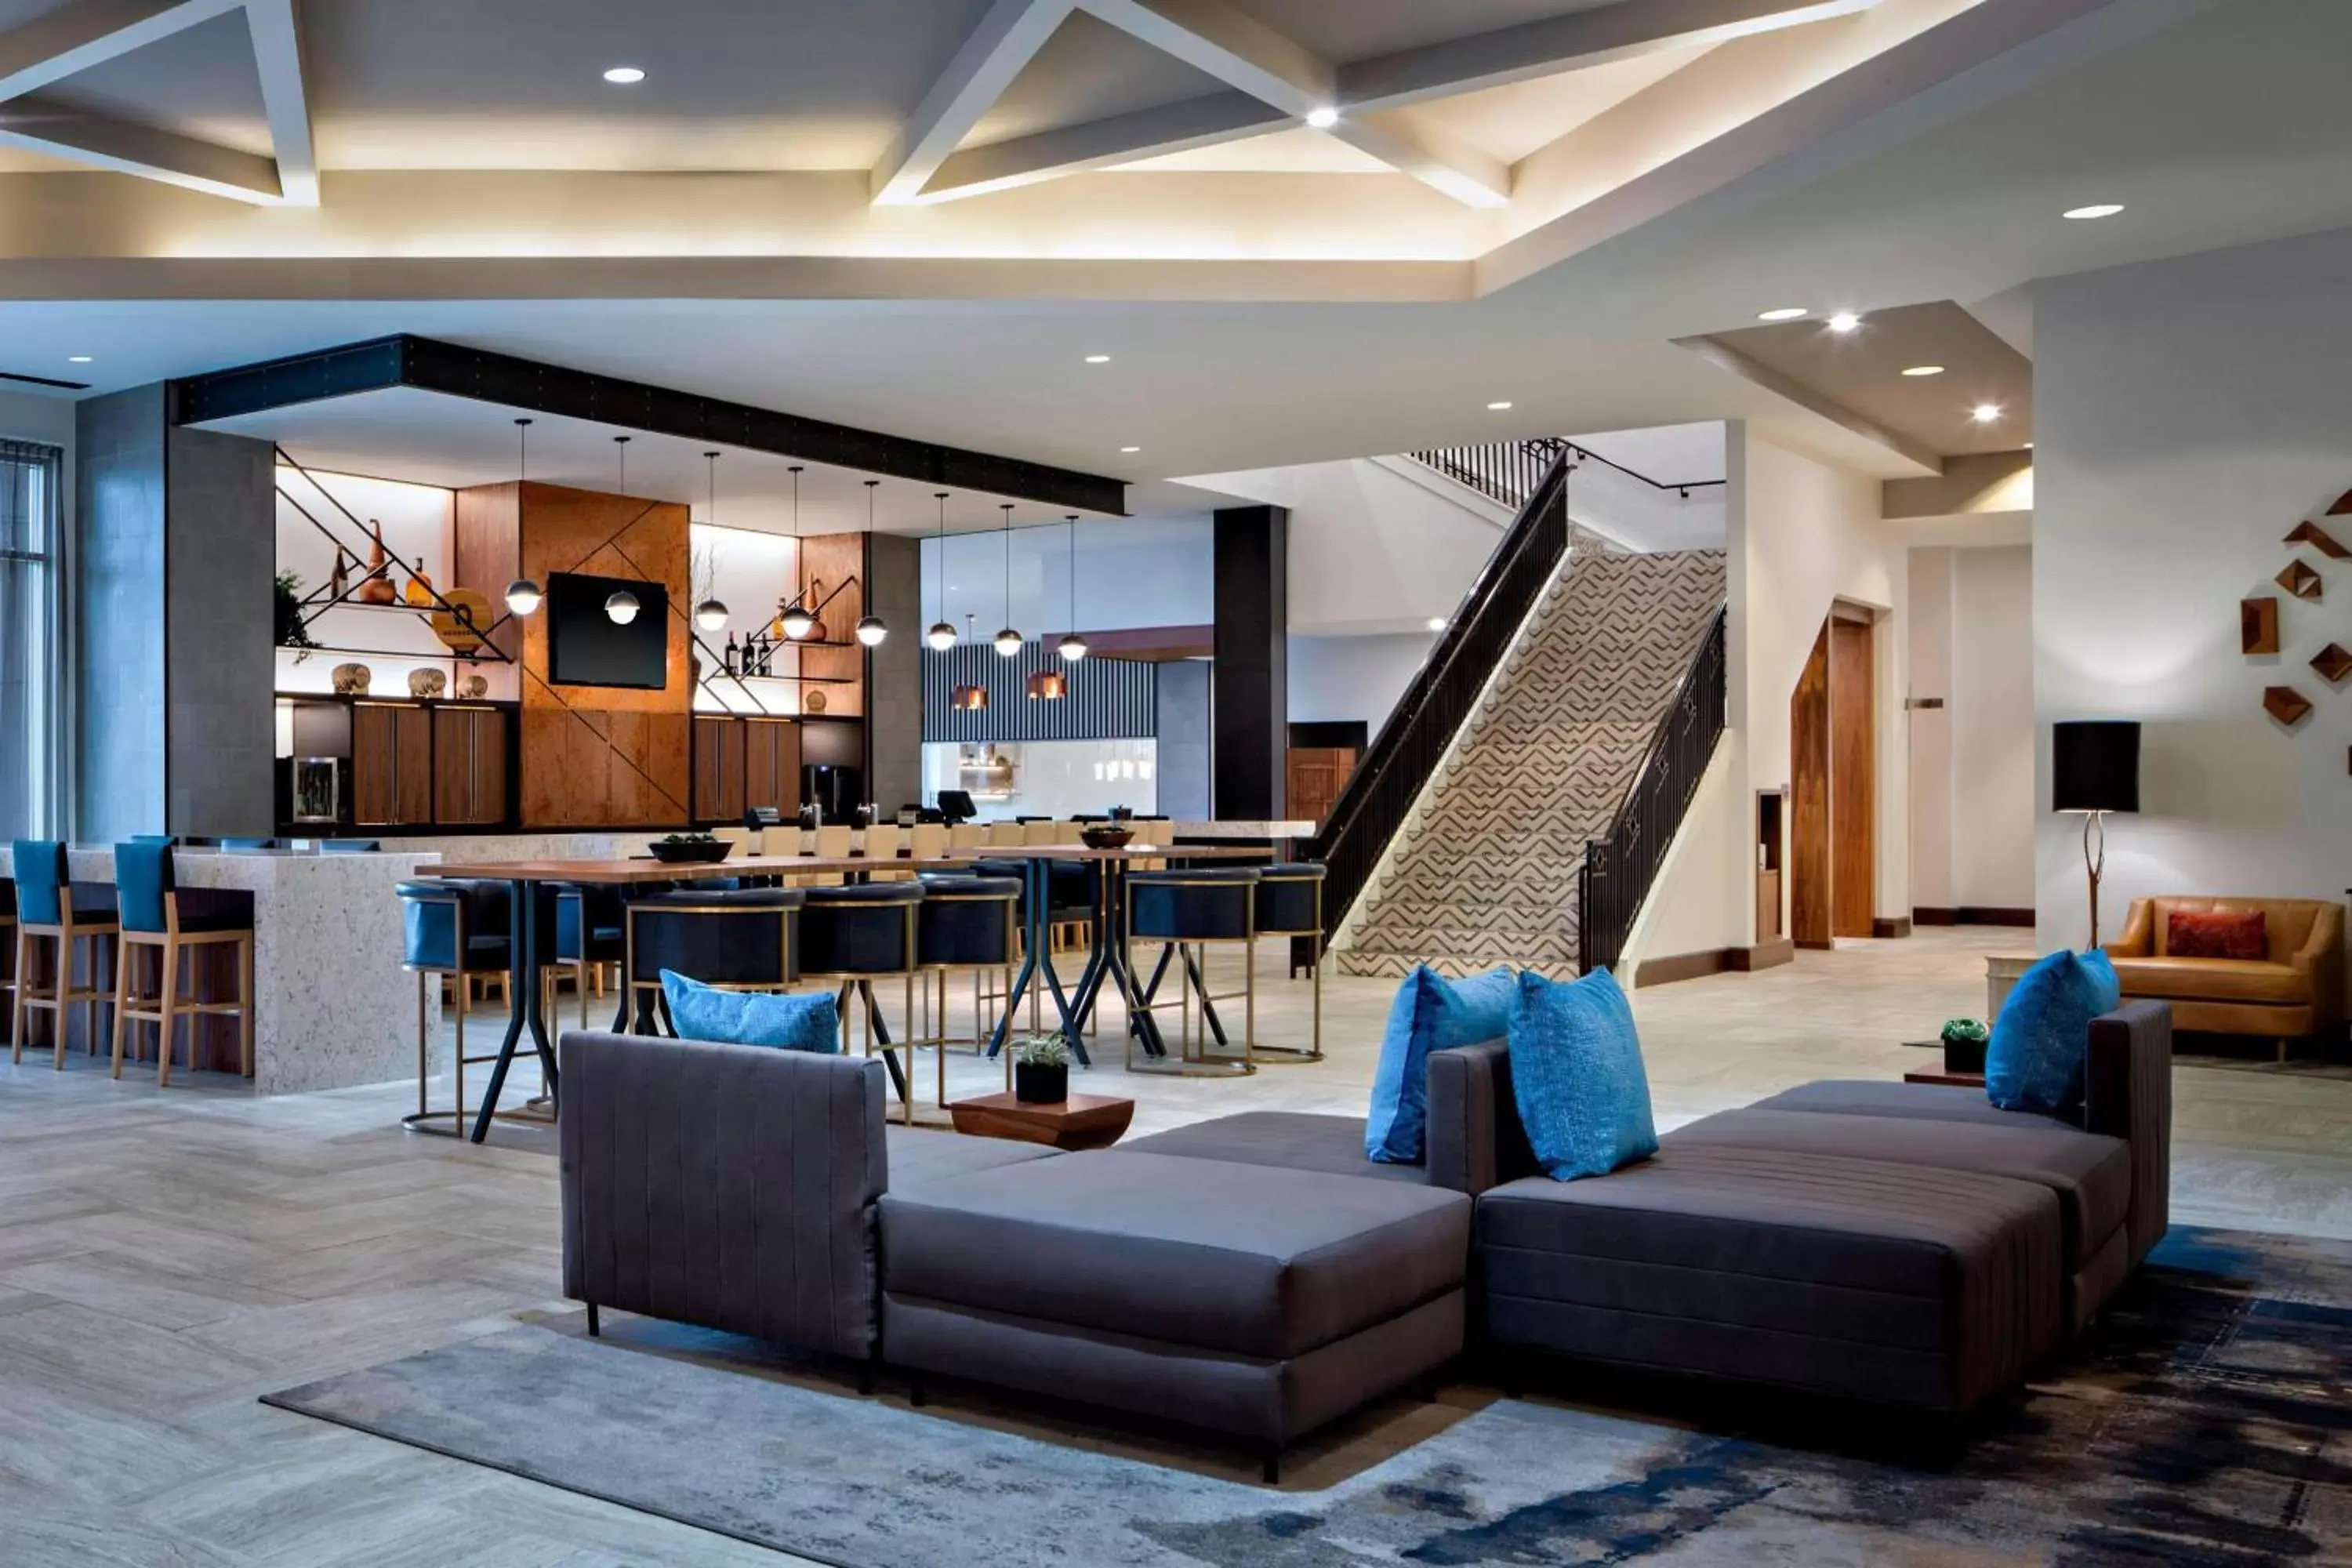 Lobby or reception in Marriott Dallas Las Colinas